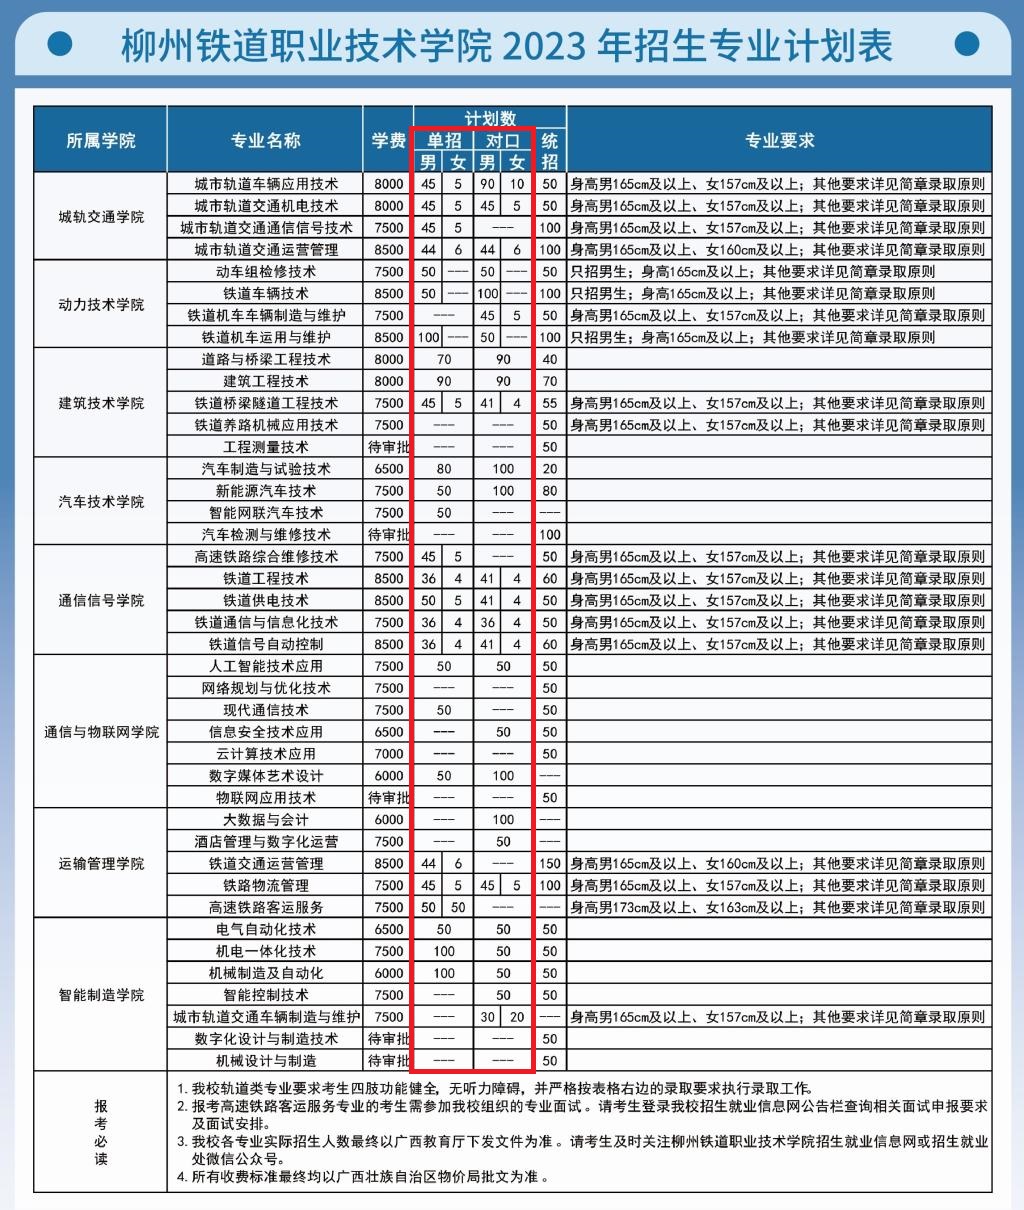 2023柳州铁道职业技术学院高职单招学费及各专业学费多少钱一年